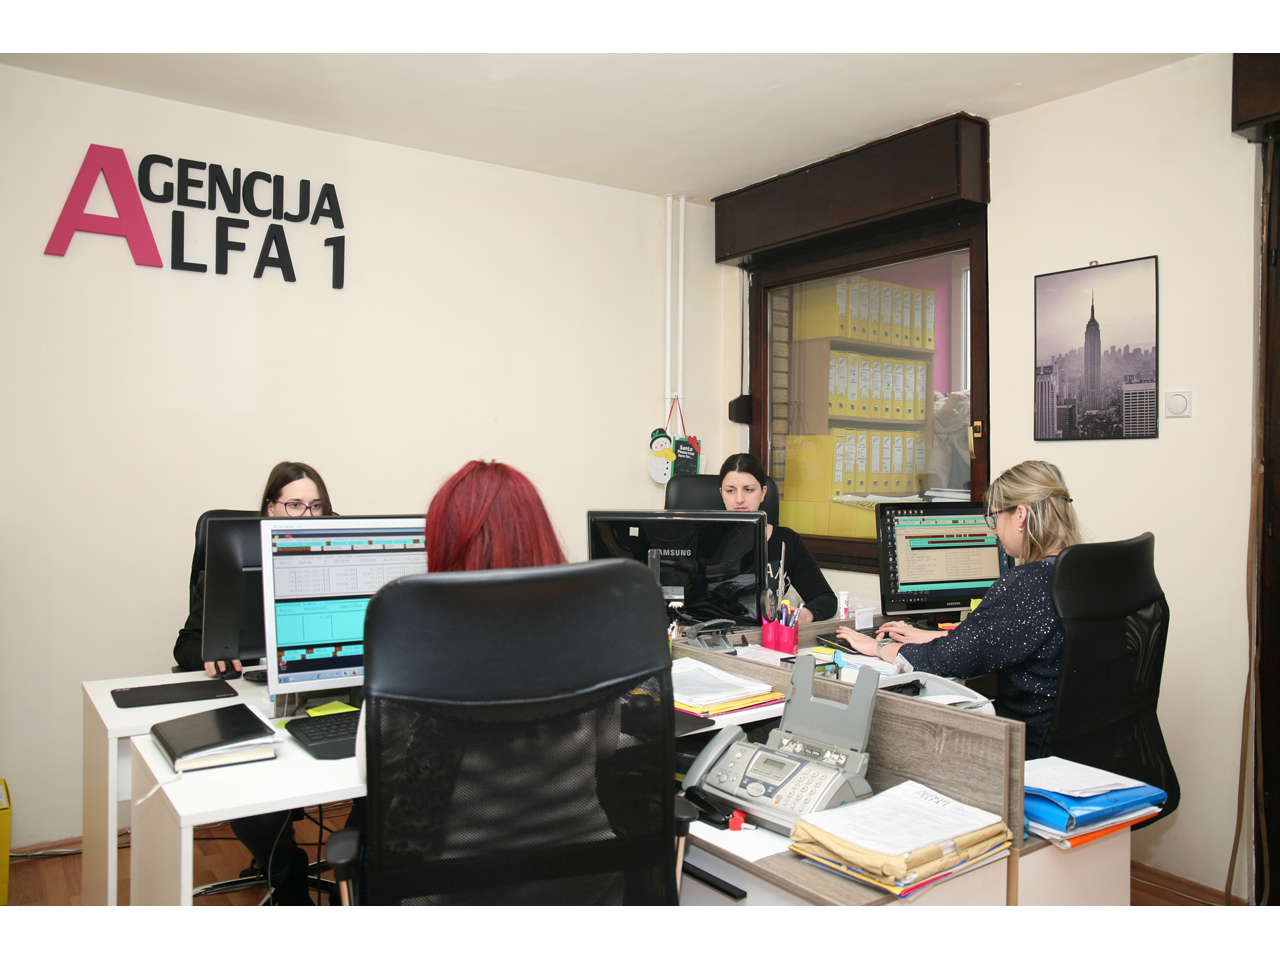 ALFA 1 AGENCY Book-keeping agencies Belgrade - Photo 3